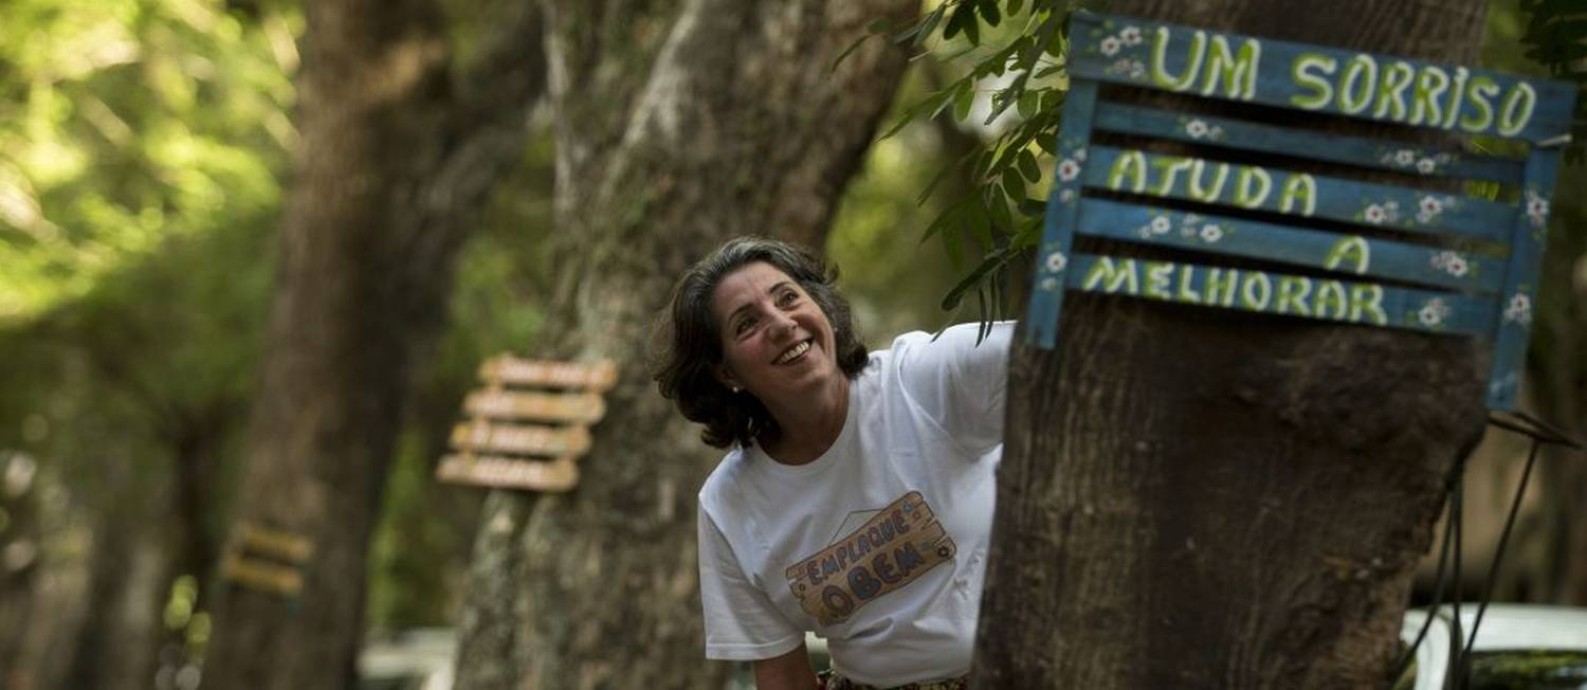 
Helen Maria faz placas de madeira com palavras e coloca nas árvores da cidade
Foto: Márcia Foletto / Agência O Globo